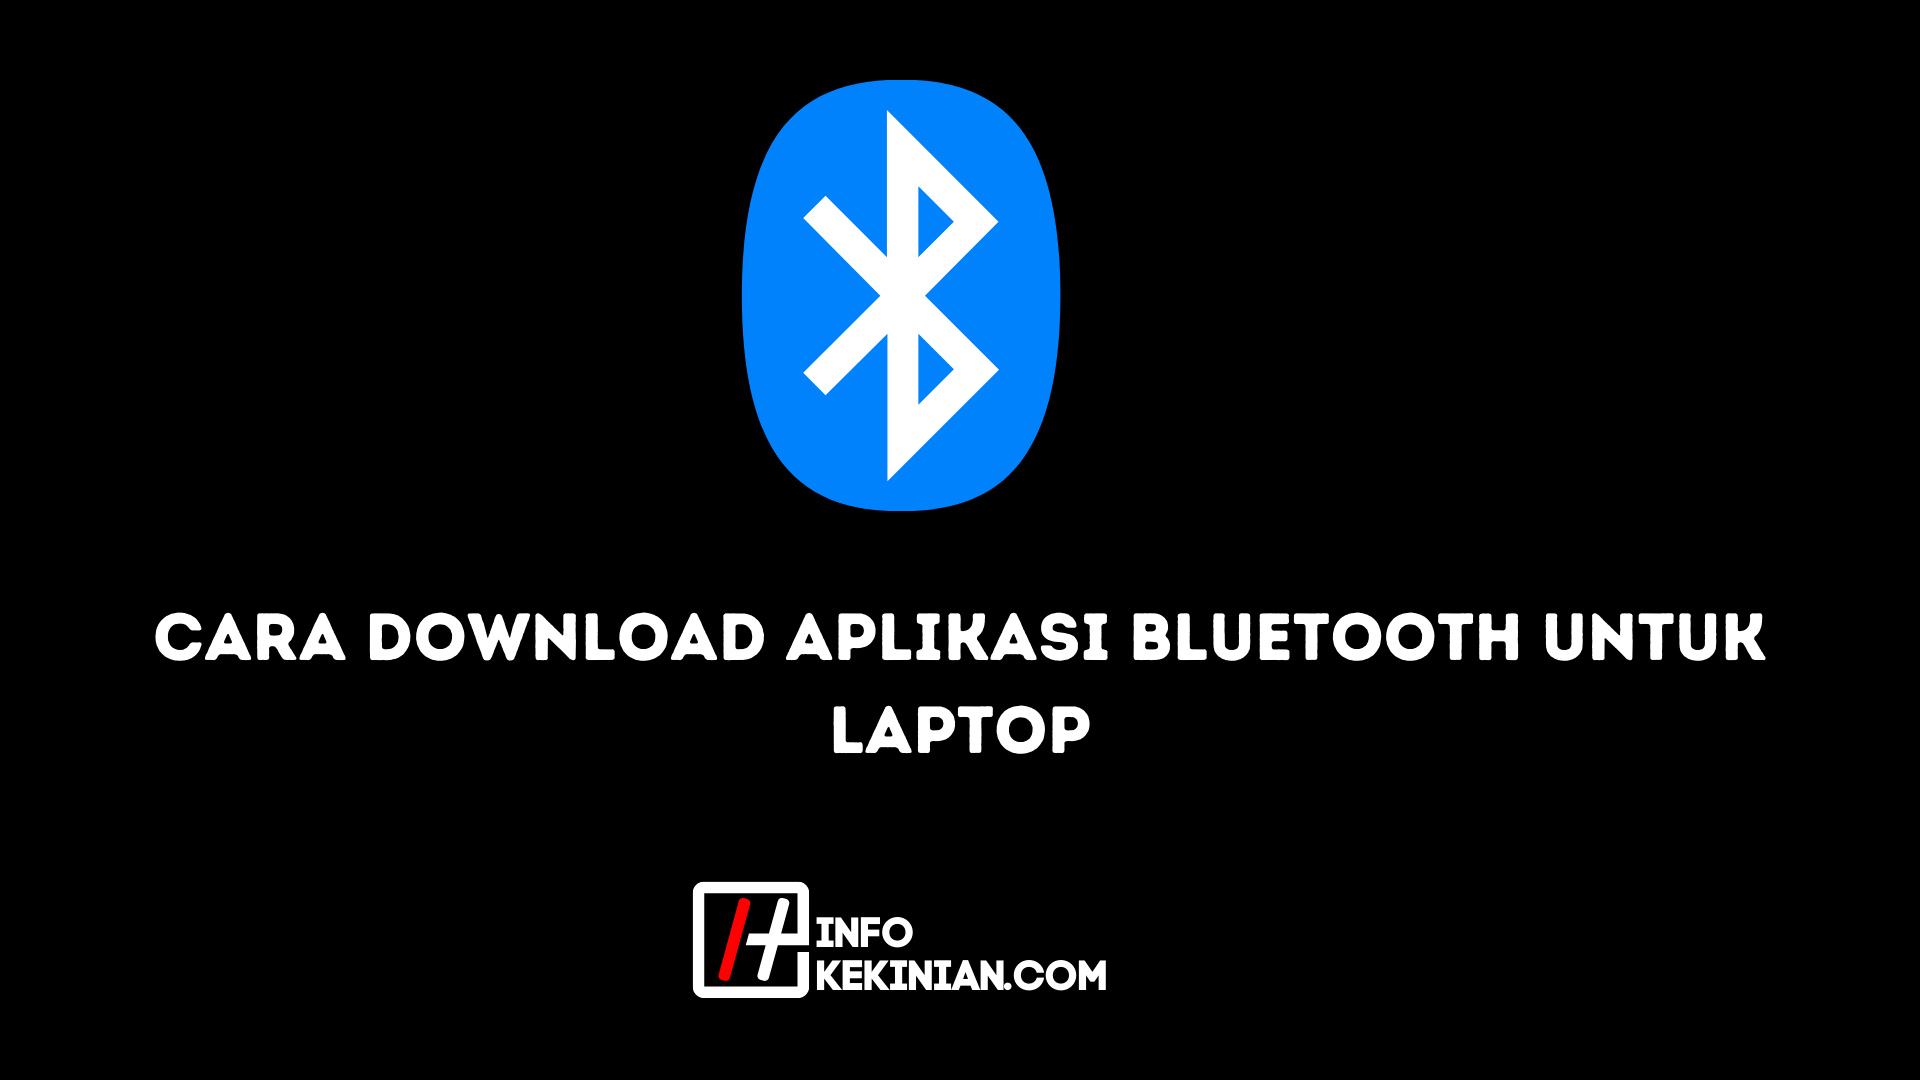 Cara Download Aplikasi Bluetooth untuk Laptop